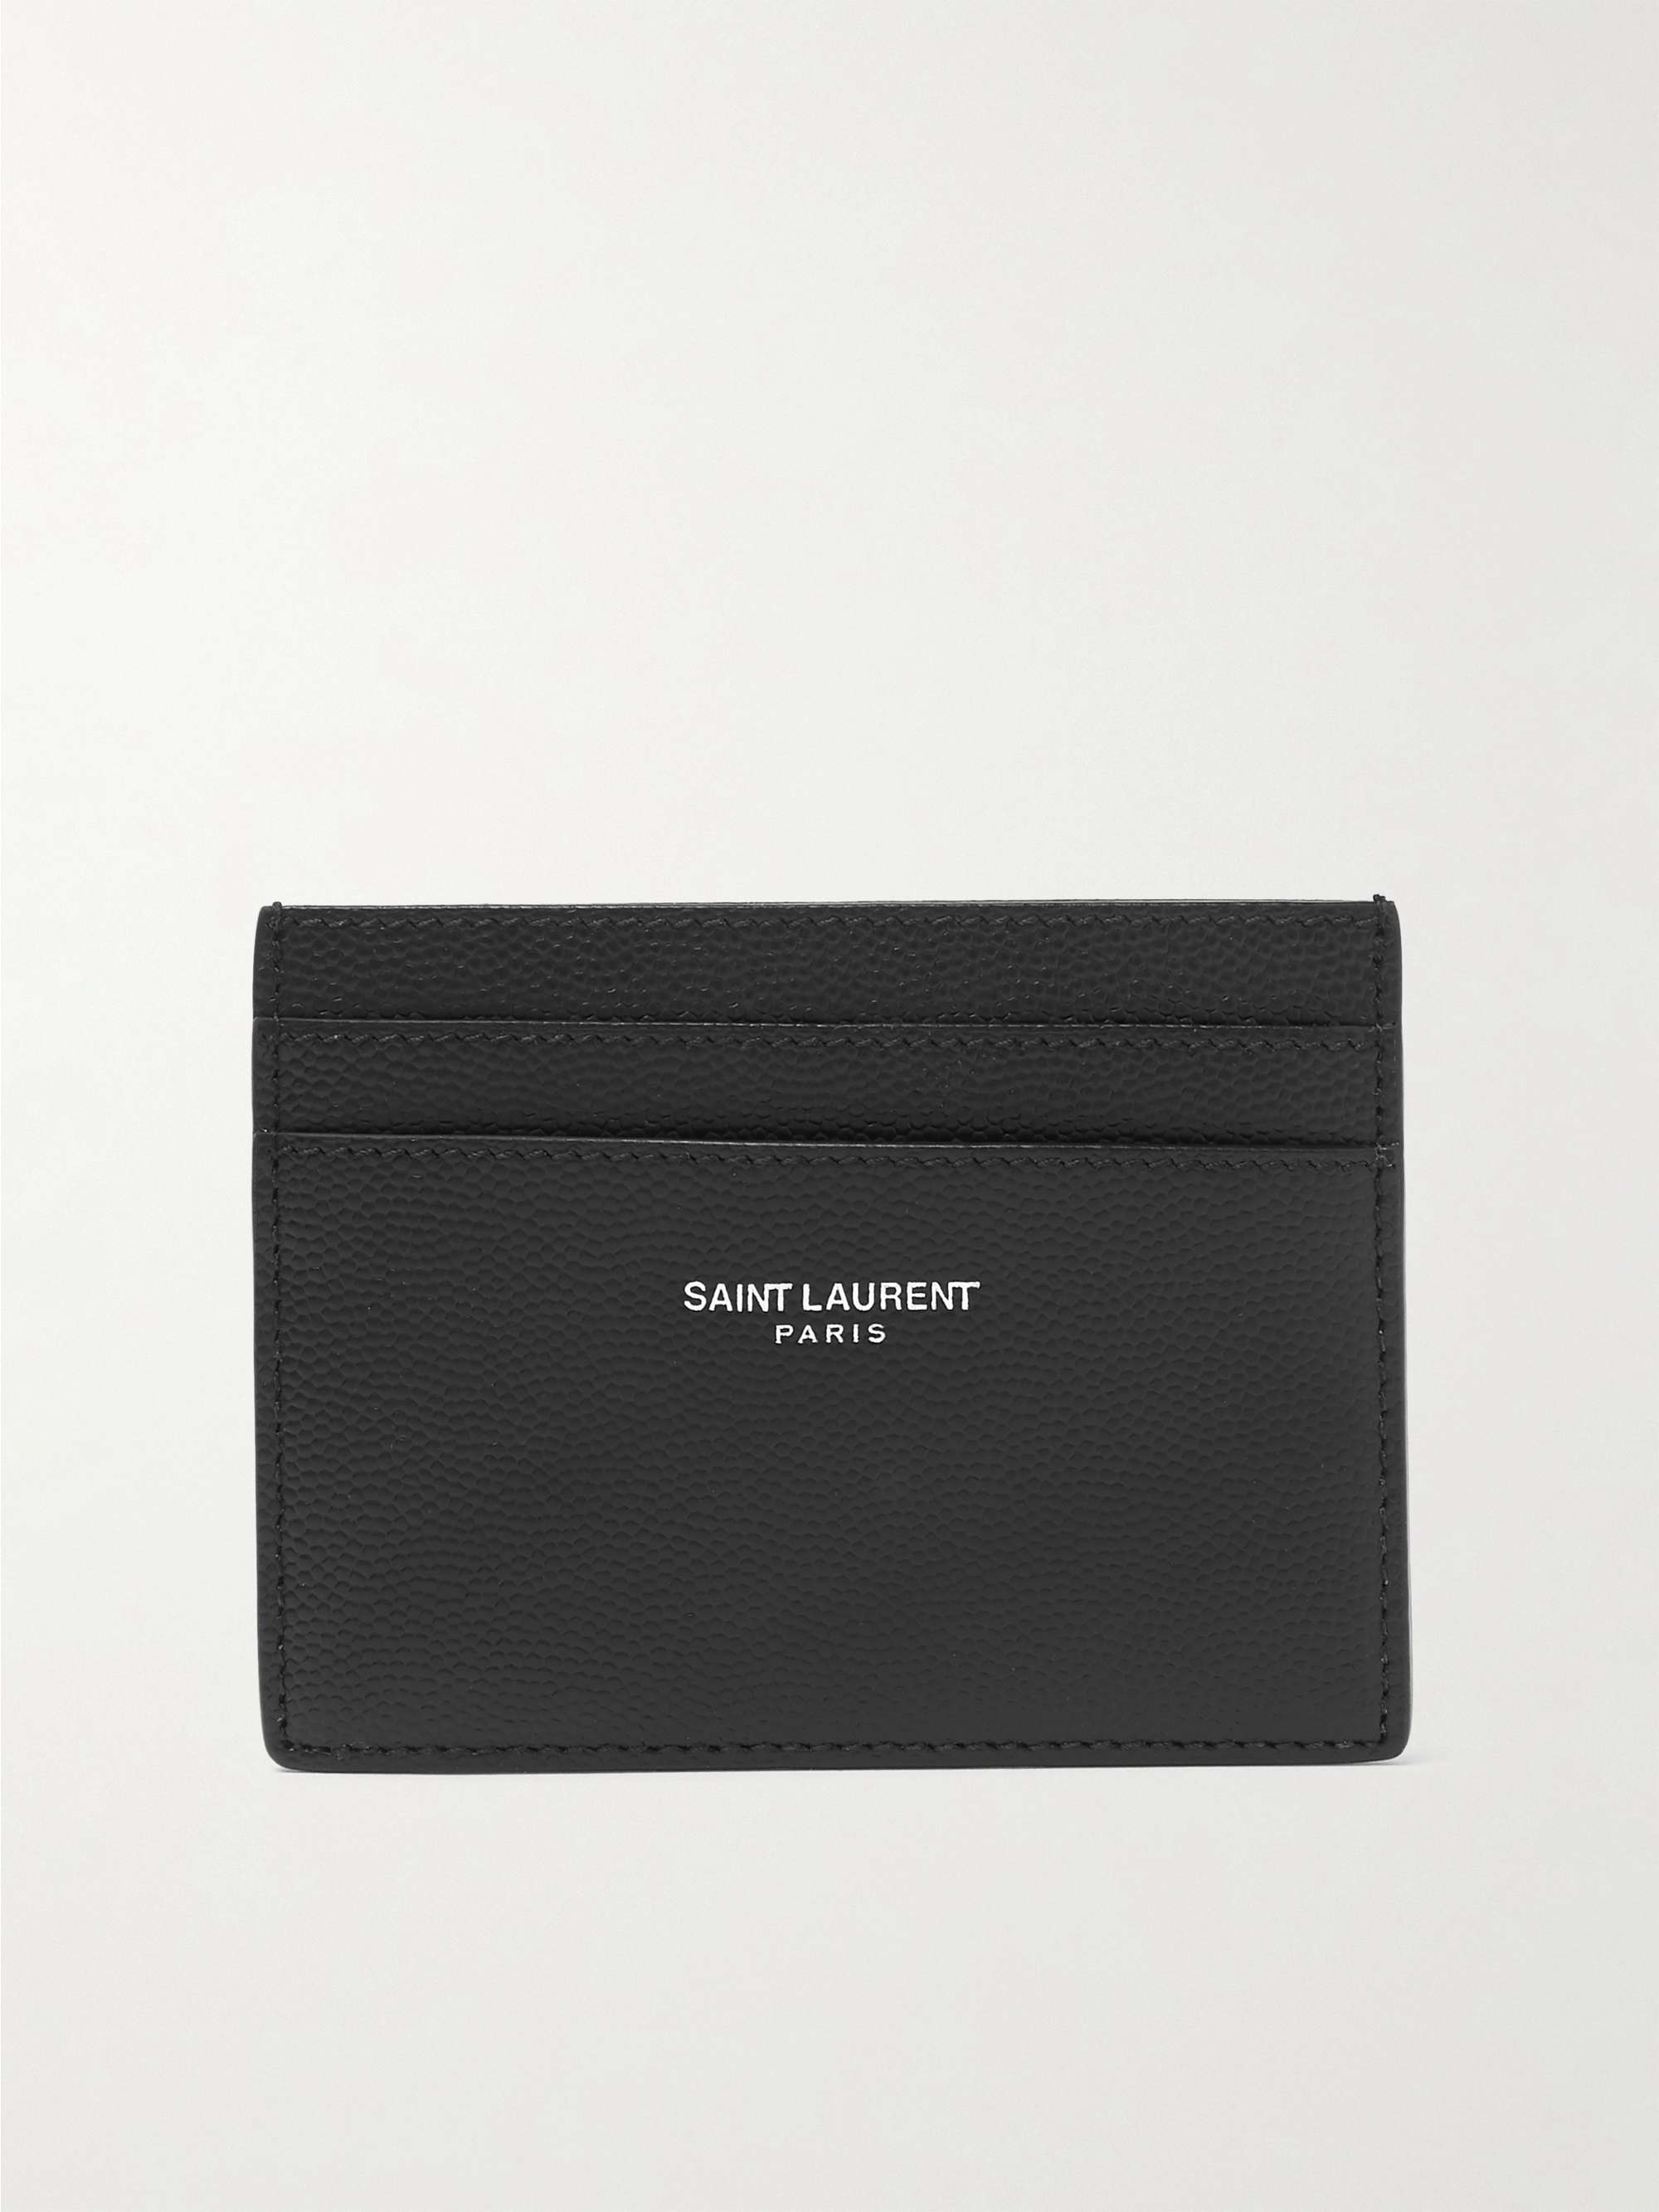 SAINT LAURENT Logo-Print Pebble-Grain Leather Cardholder for Men | MR PORTER